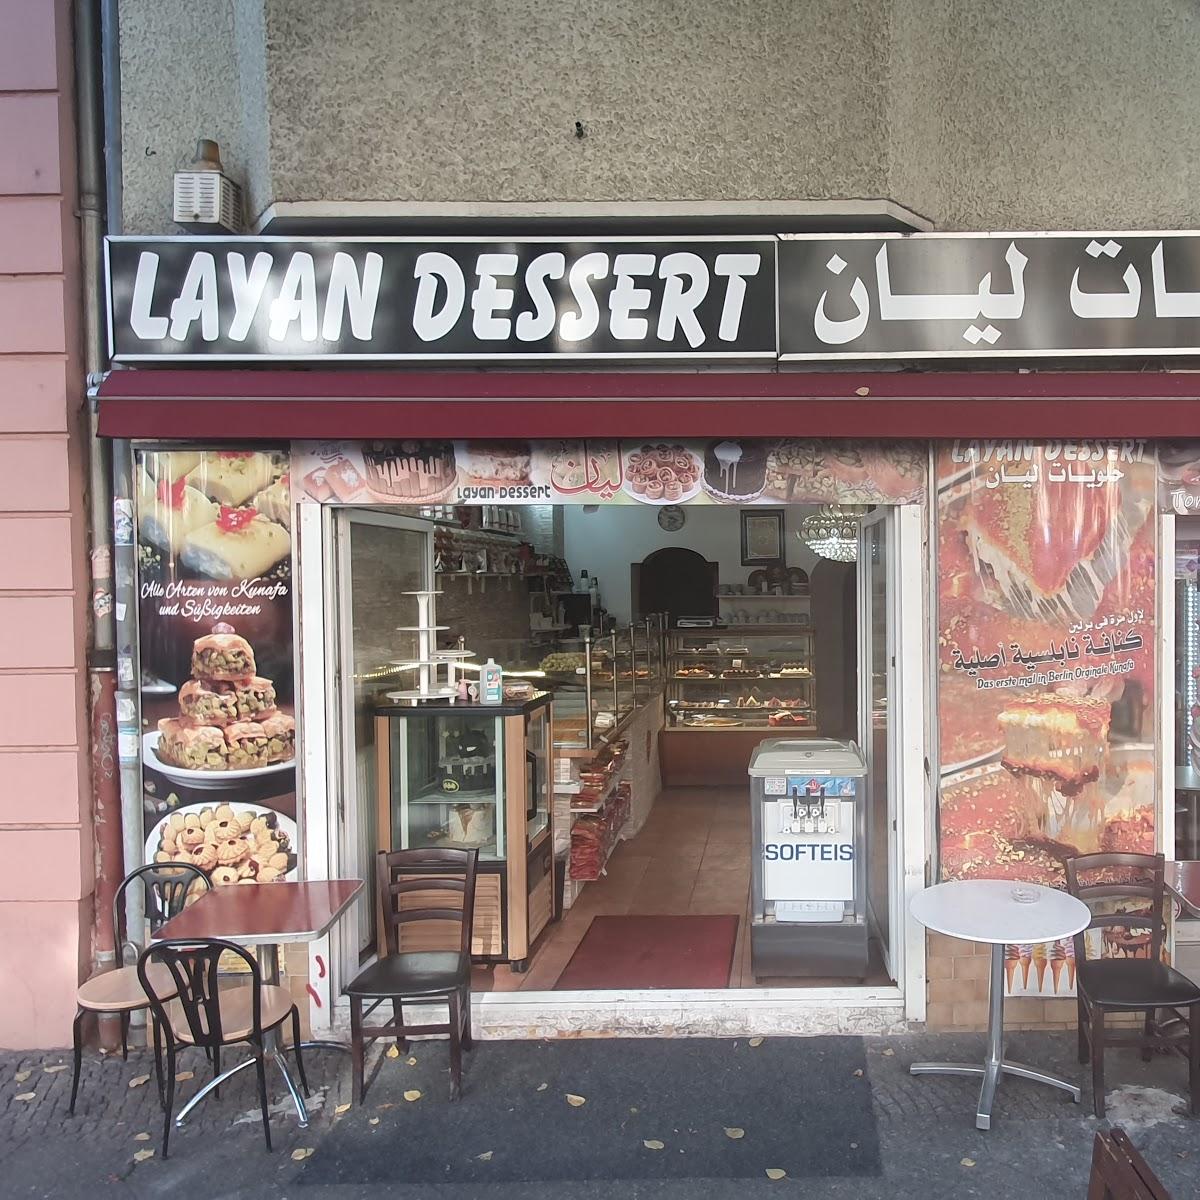 Restaurant "Layan Dessert" in Berlin